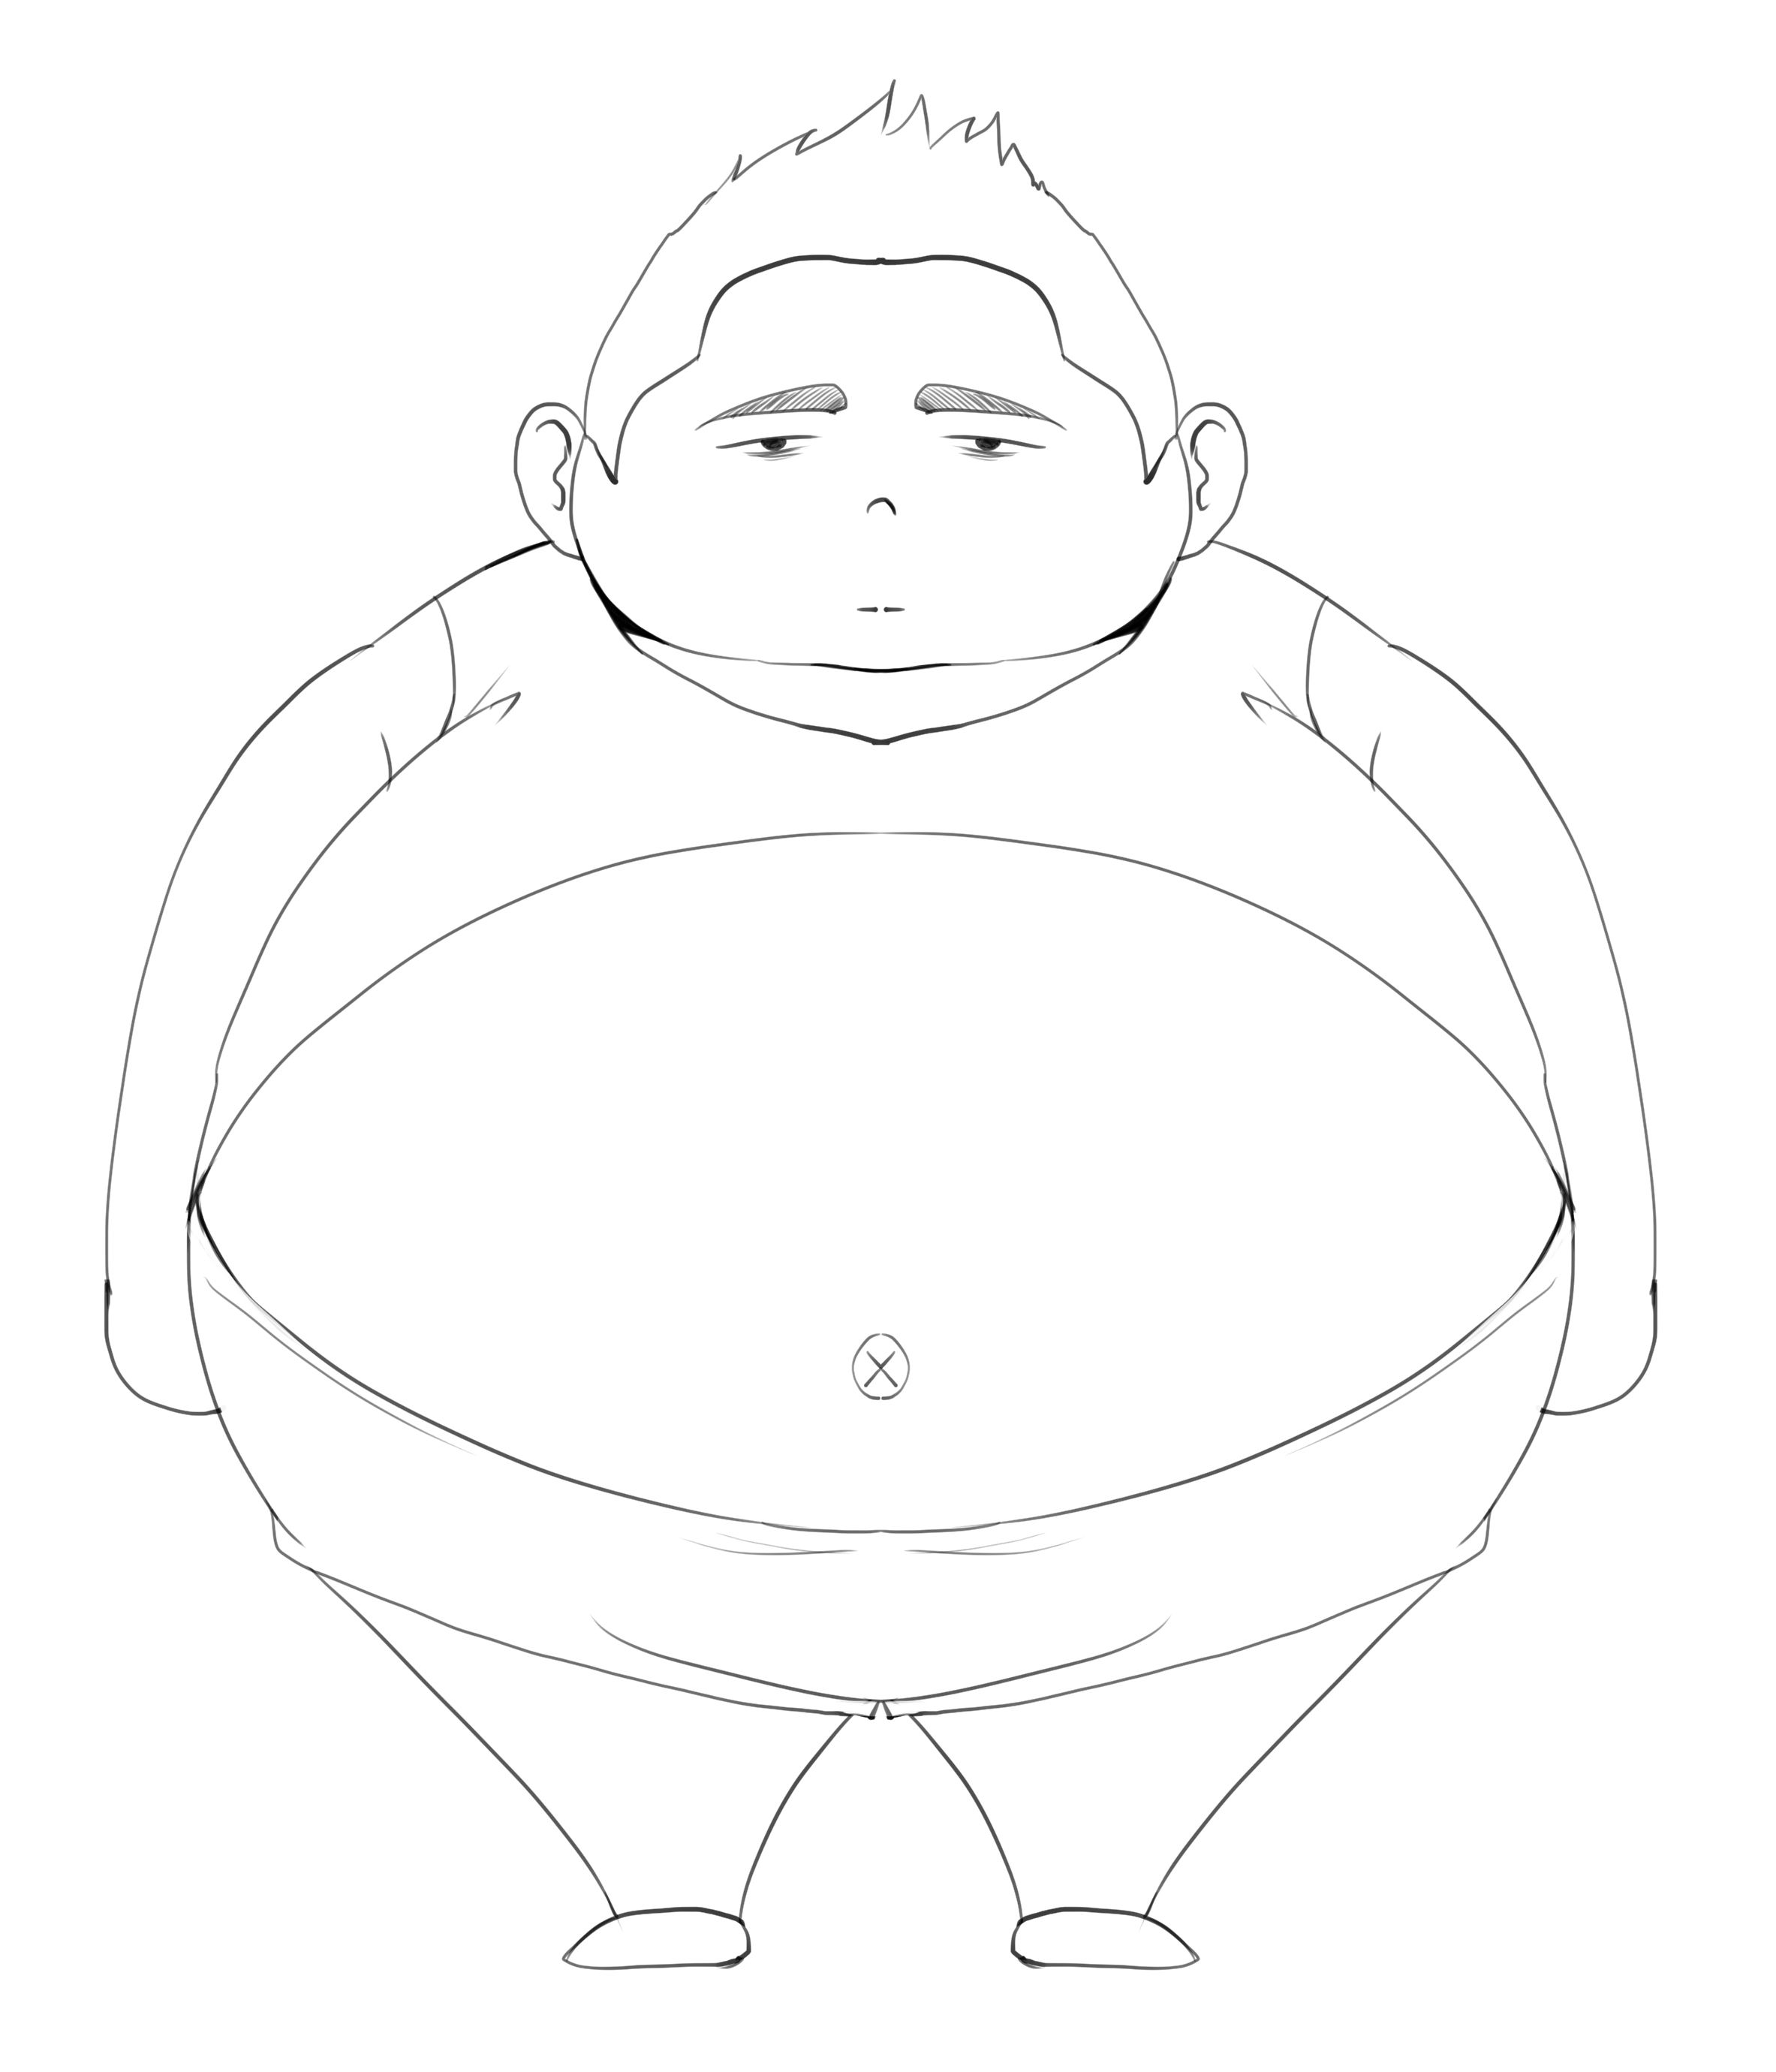 简笔画人物胖子图片